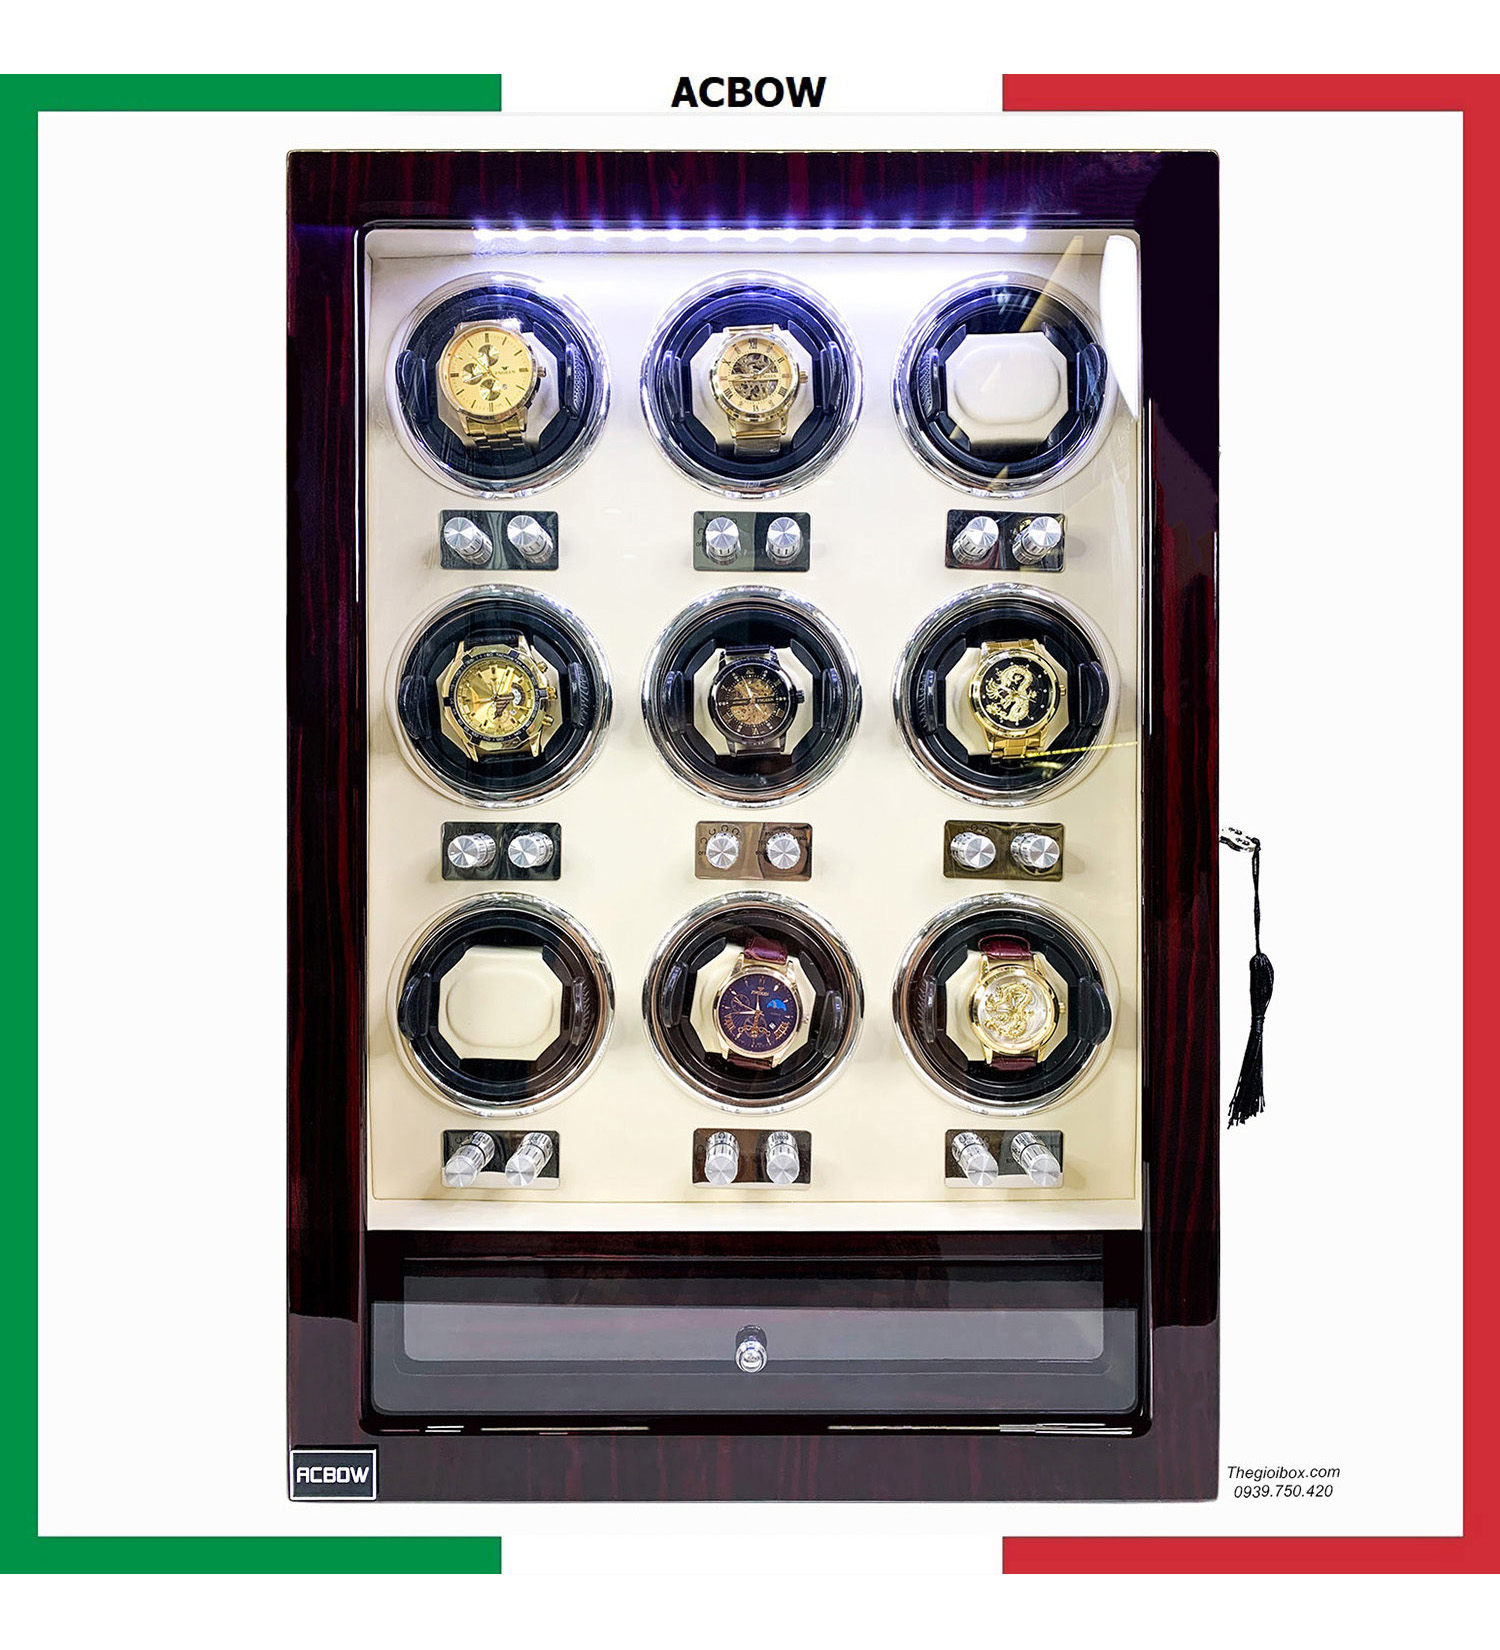 Tủ xoay đồng hồ cơ ACBOW cao cấp - 9 xoay + 6 tĩnh - LED - Ổ khóa - Giá rẻ